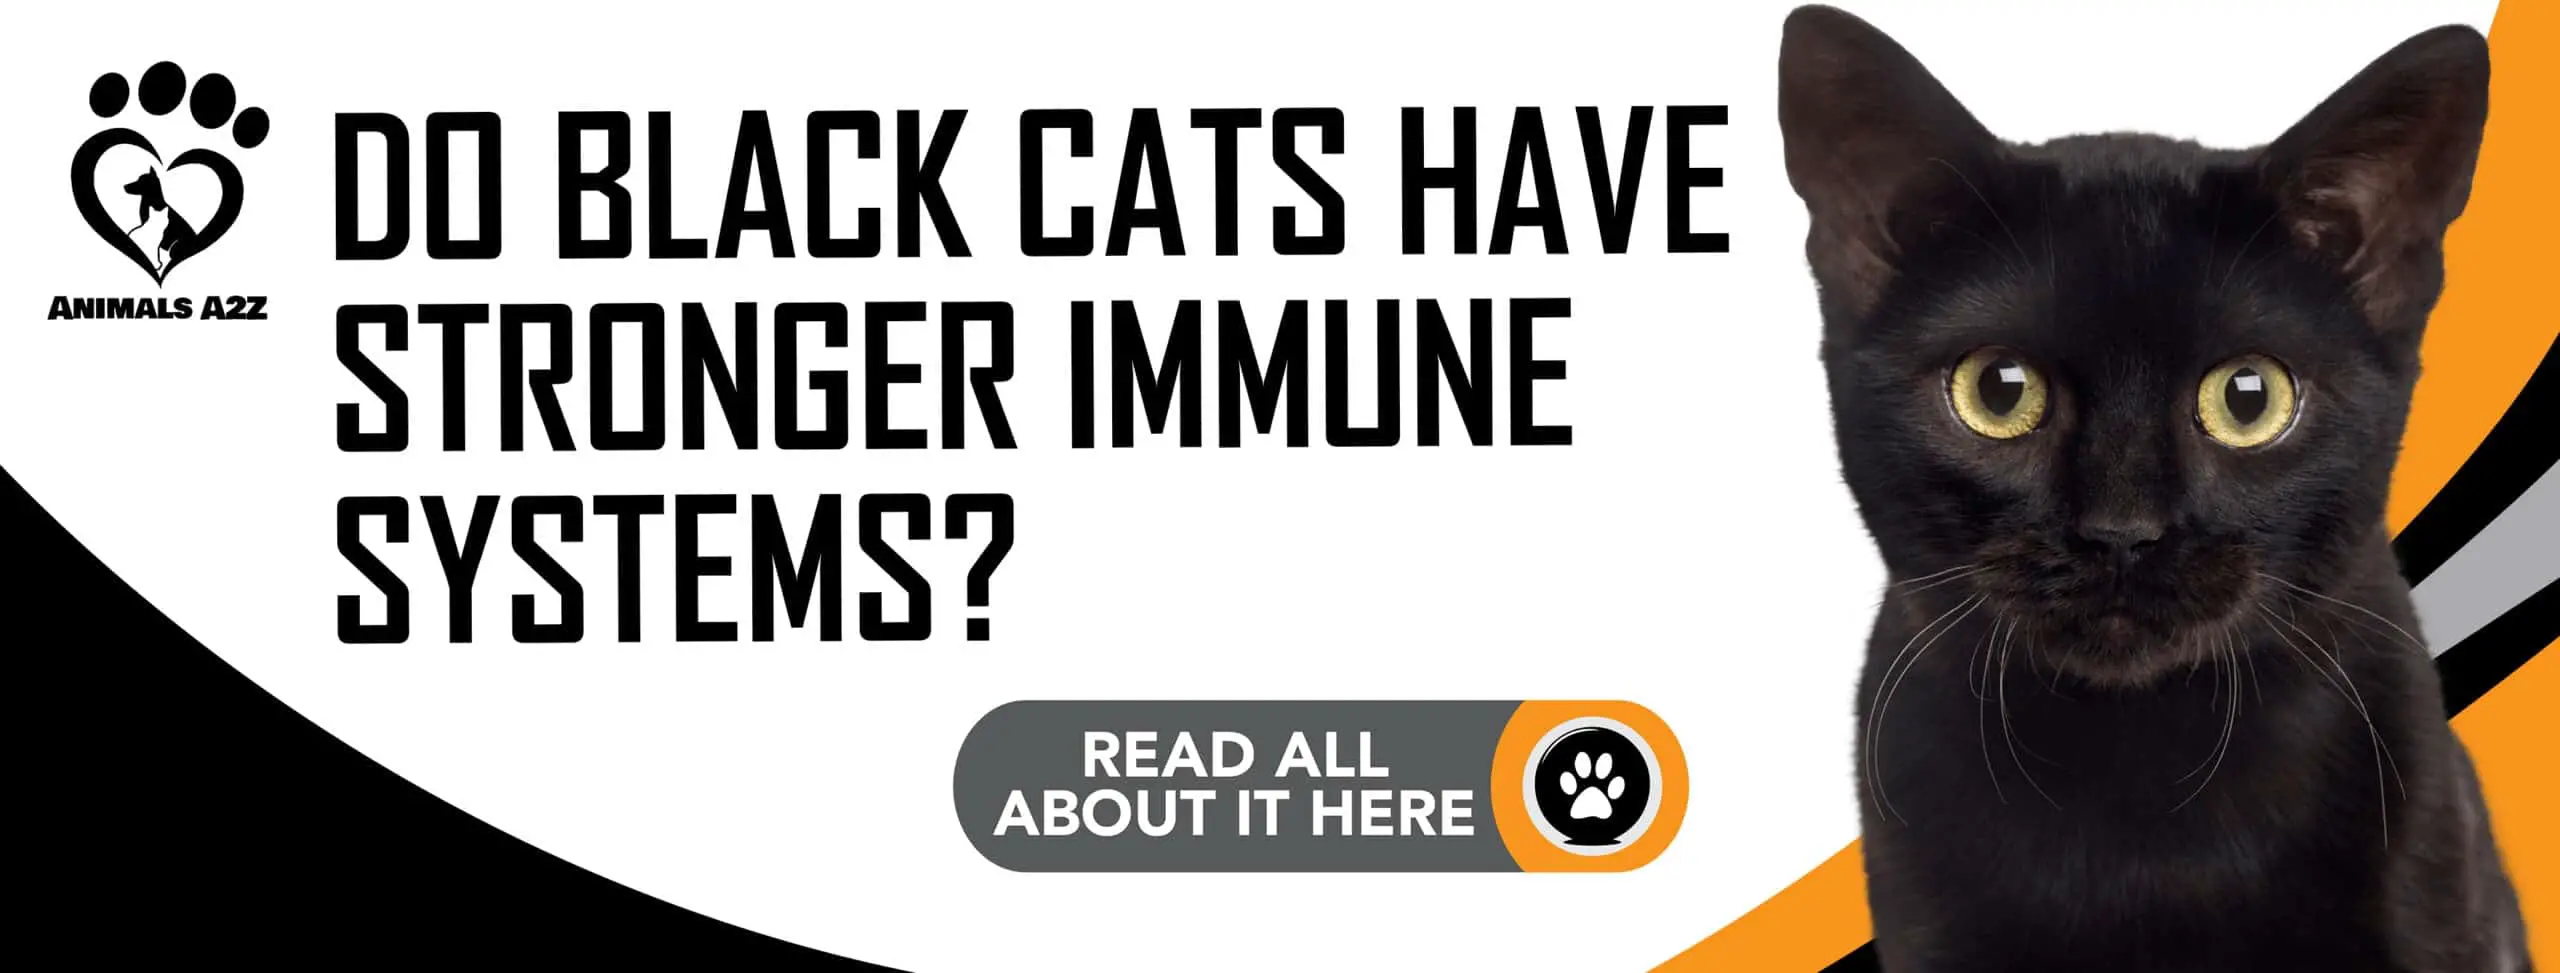 Har sorte katte et stærkere immunforsvar